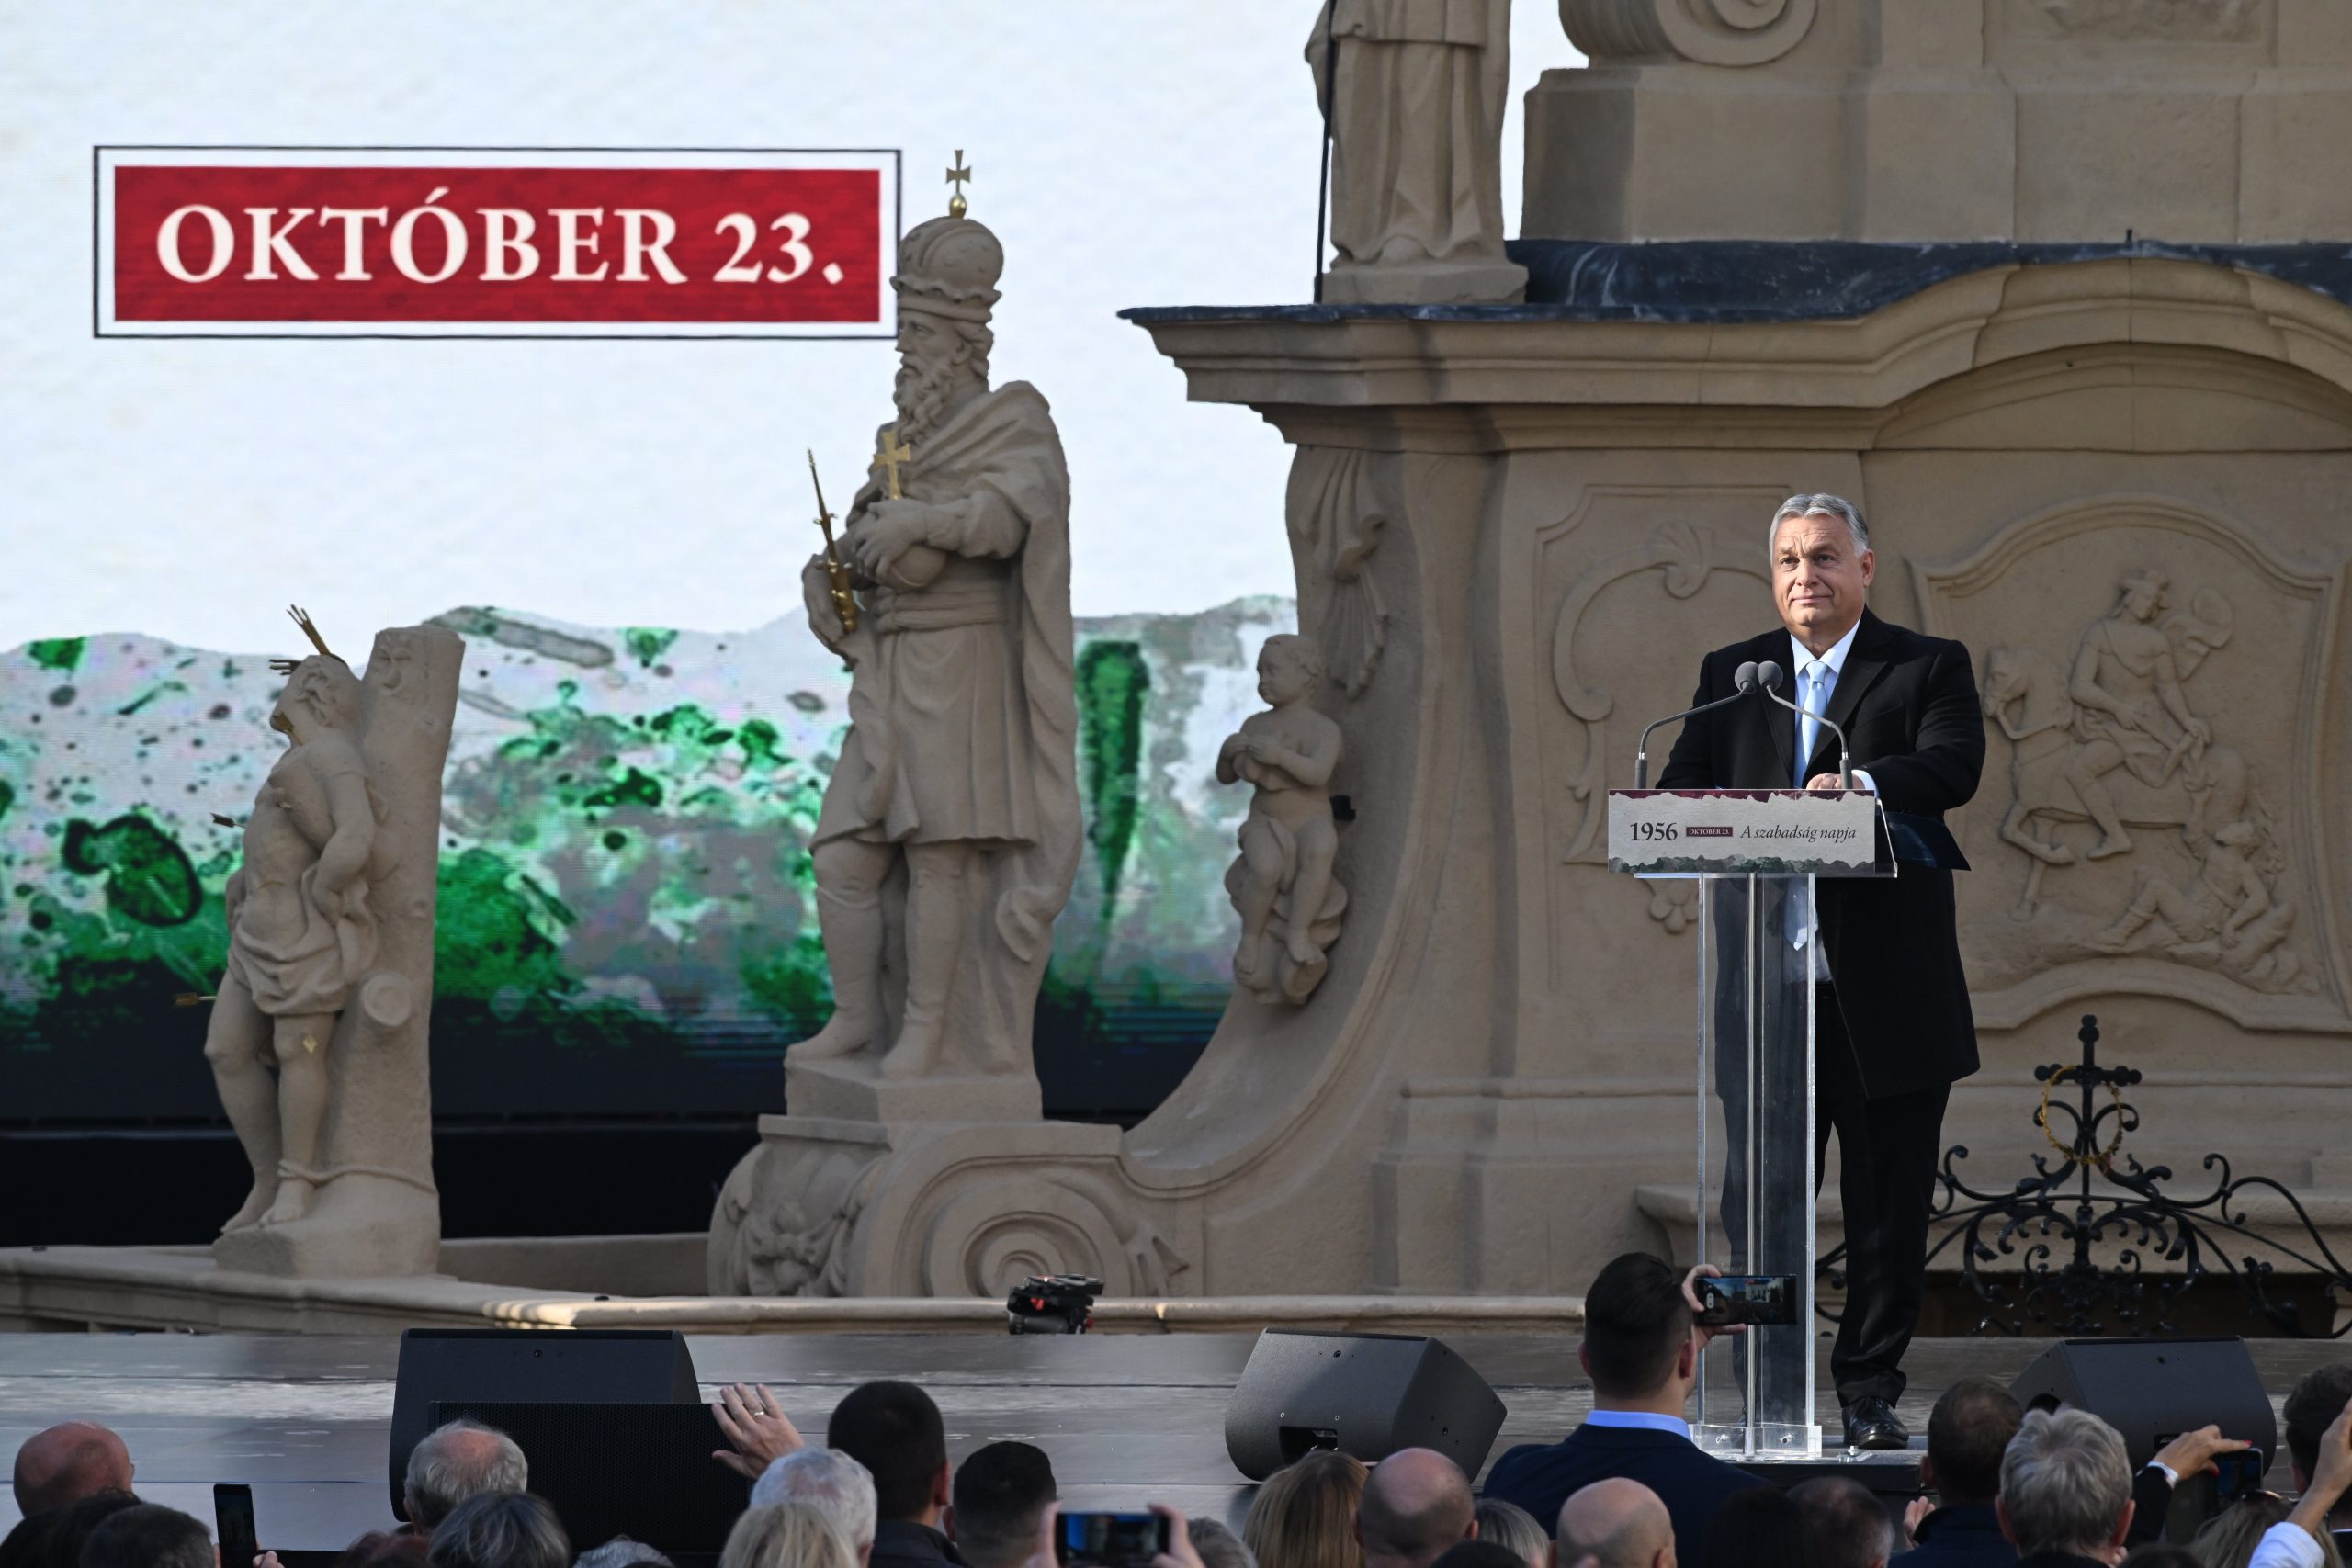 Moskau war unverbesserlich, Brüssel ist es nicht, sagt Viktor Orbán